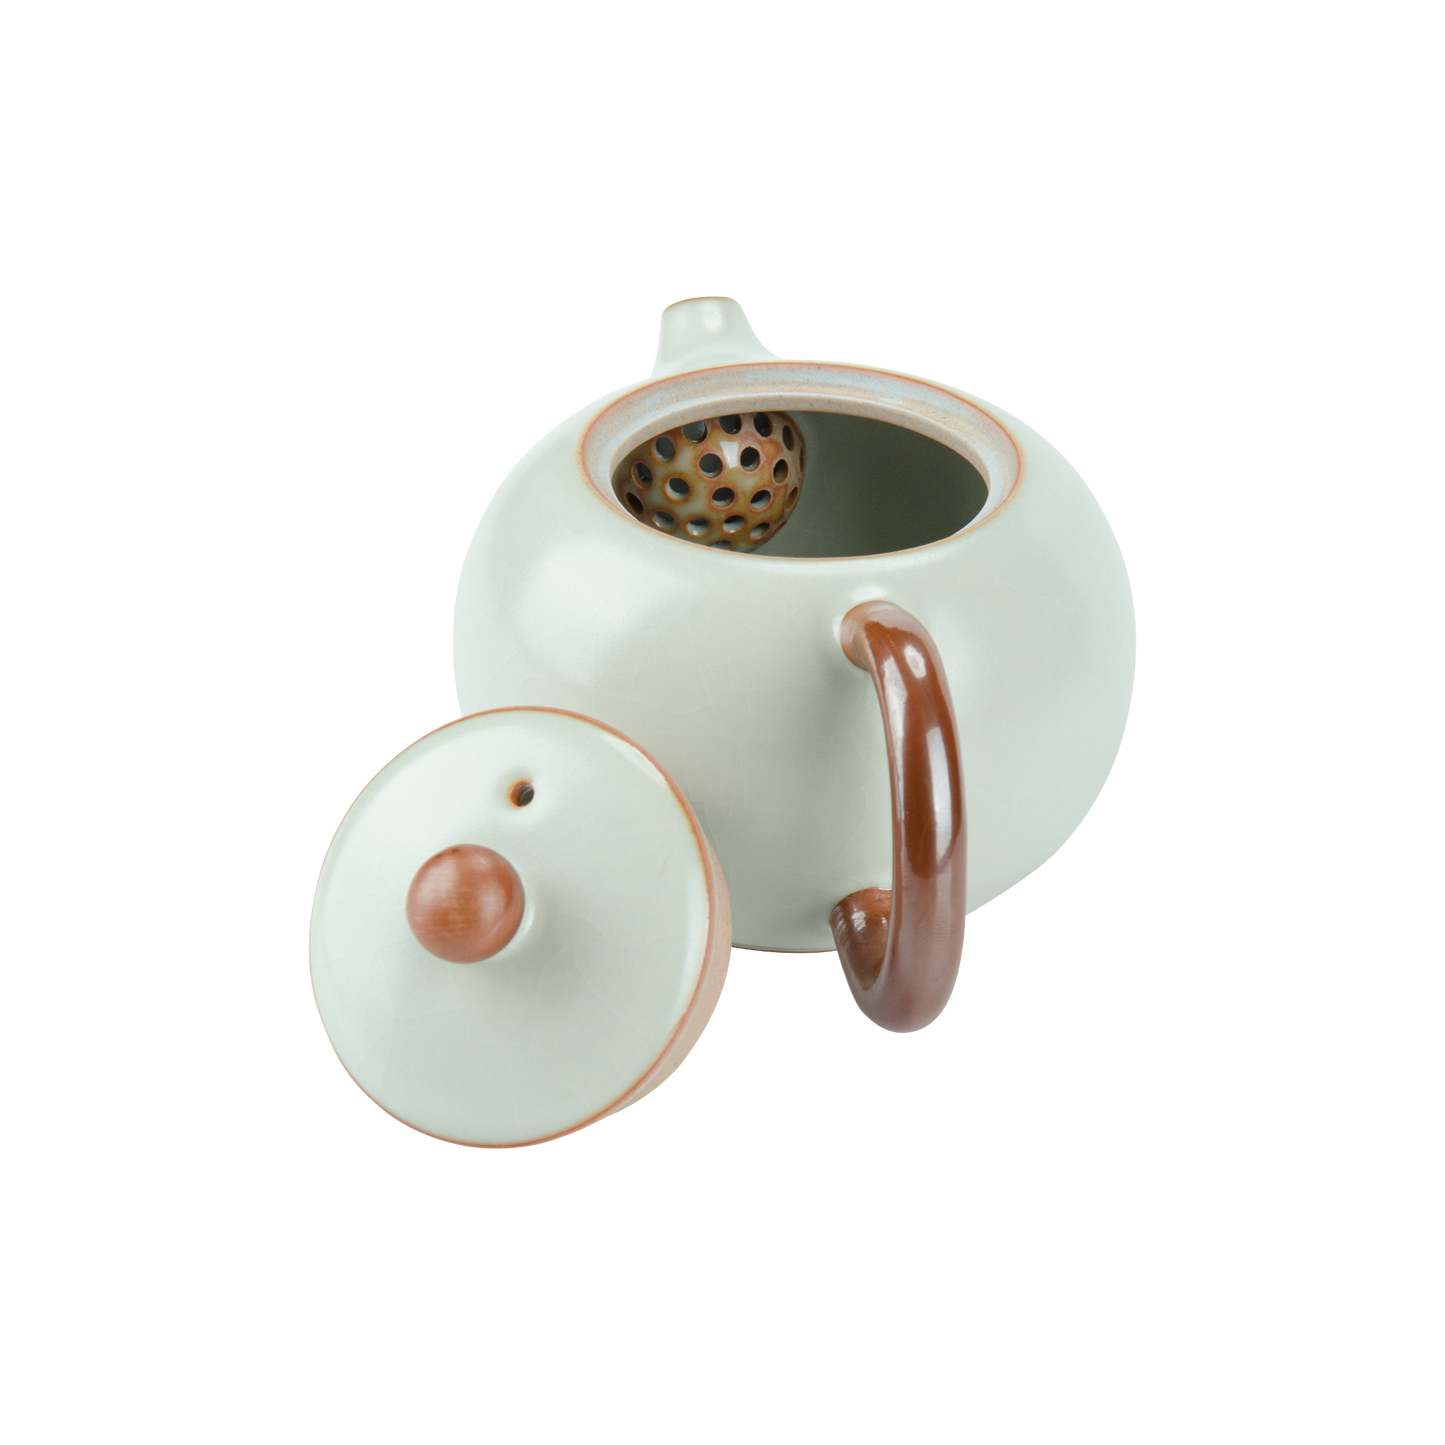 Ru Kiln Xishi Shaped Teapot